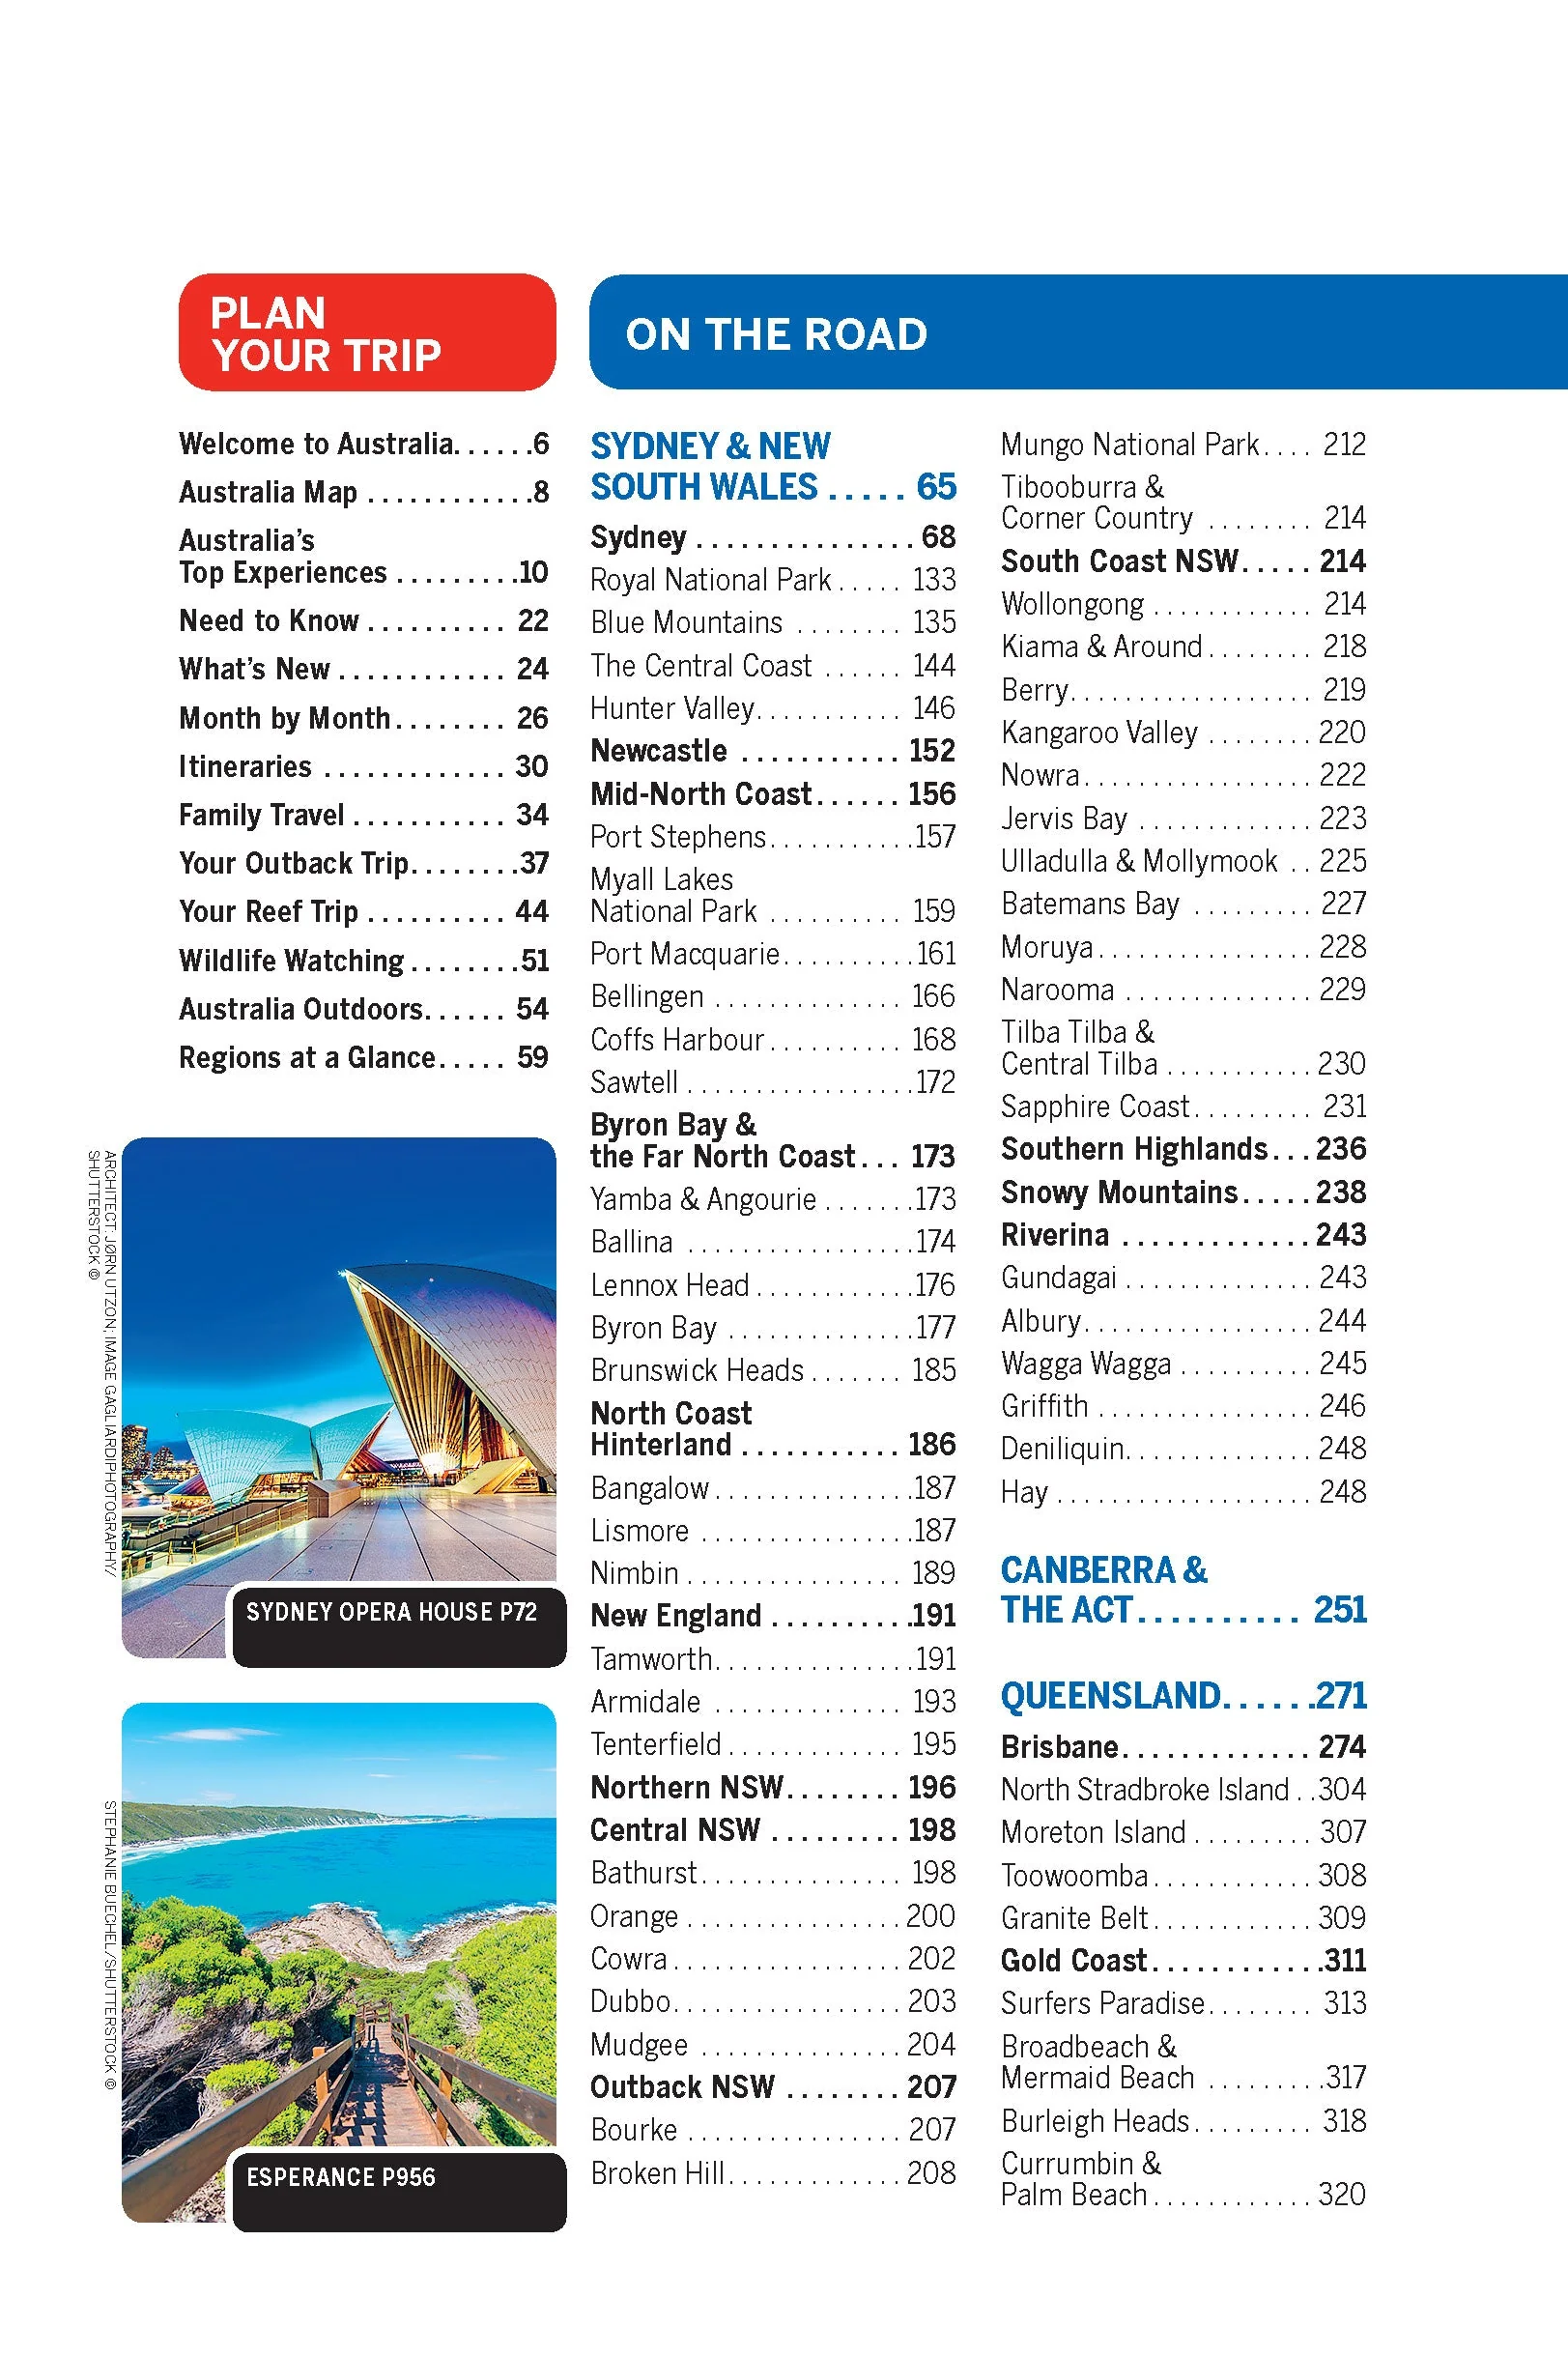 Australia Lonely Planet